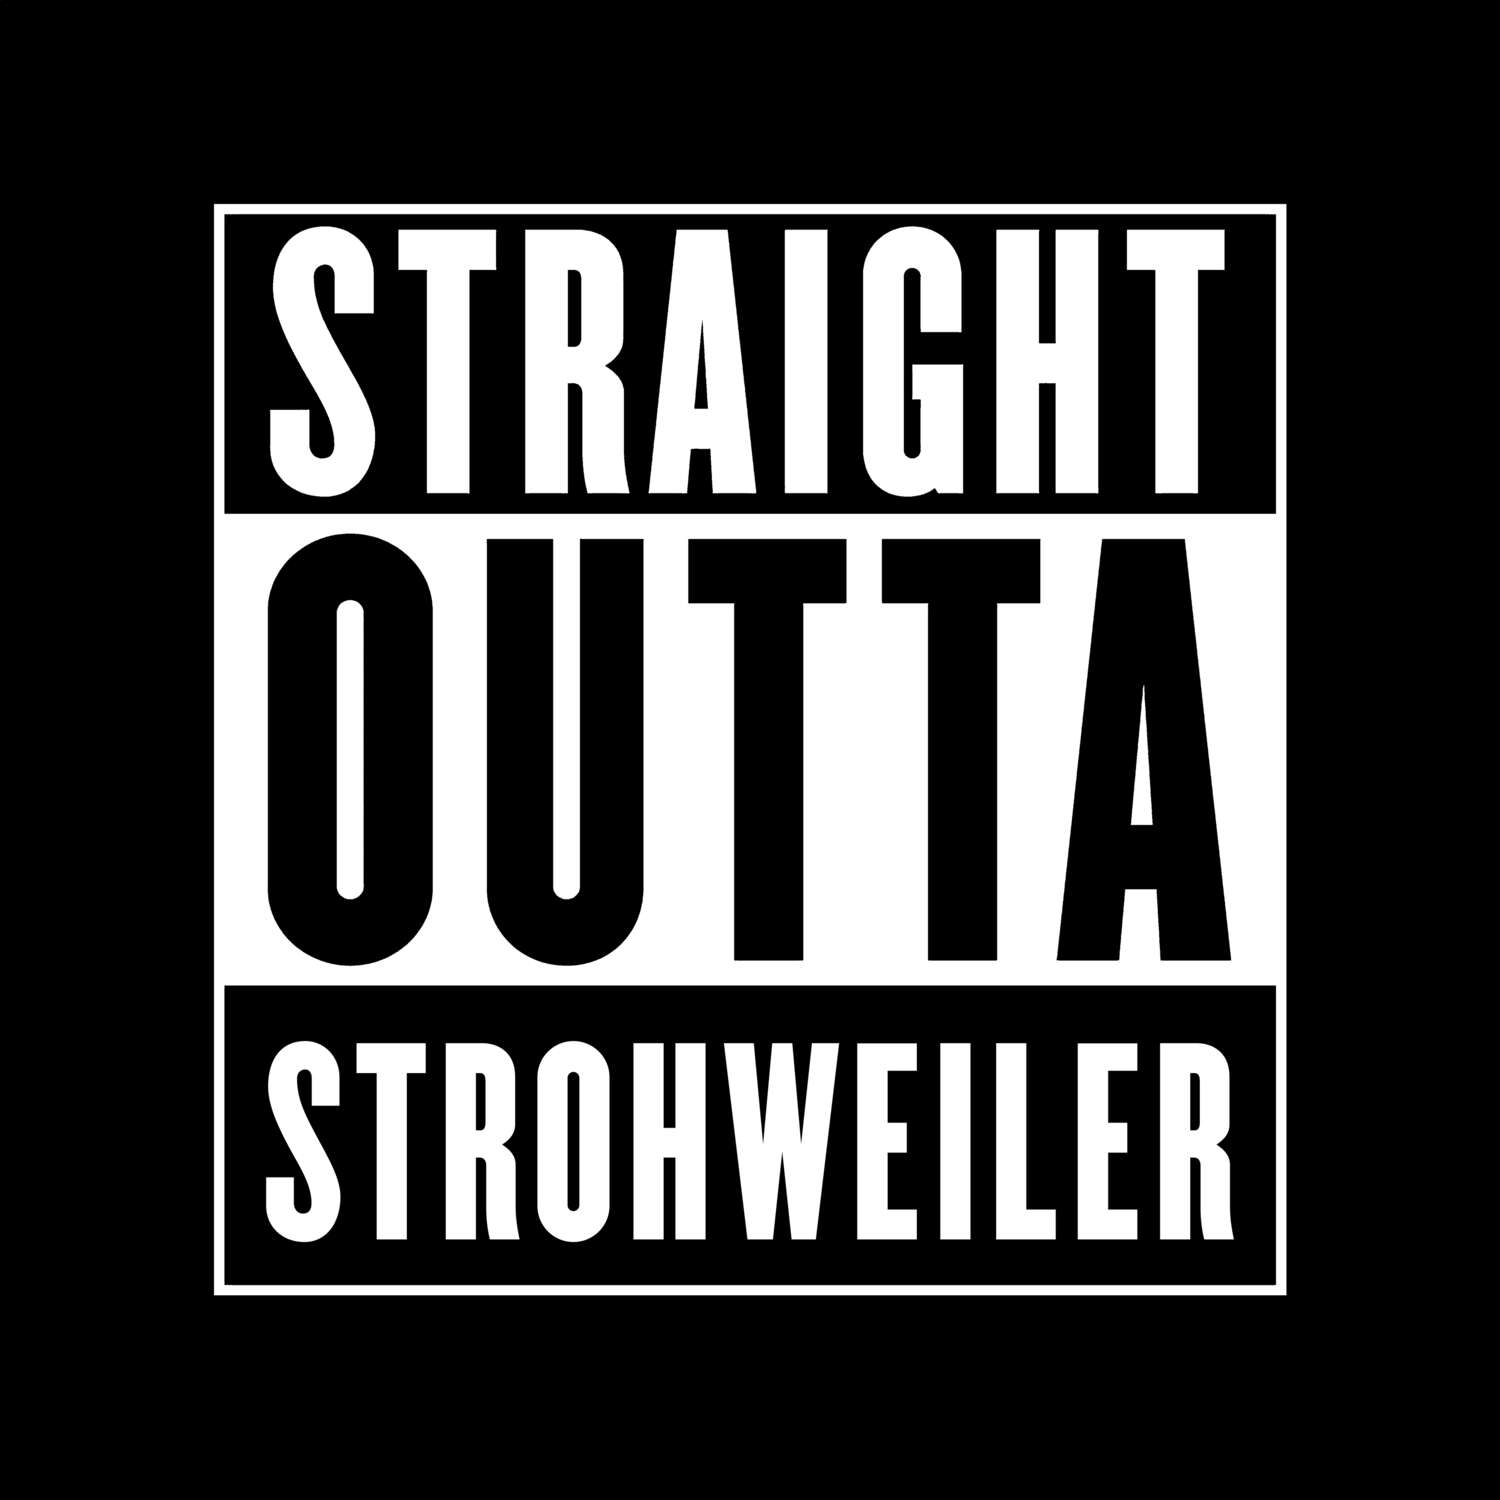 Strohweiler T-Shirt »Straight Outta«